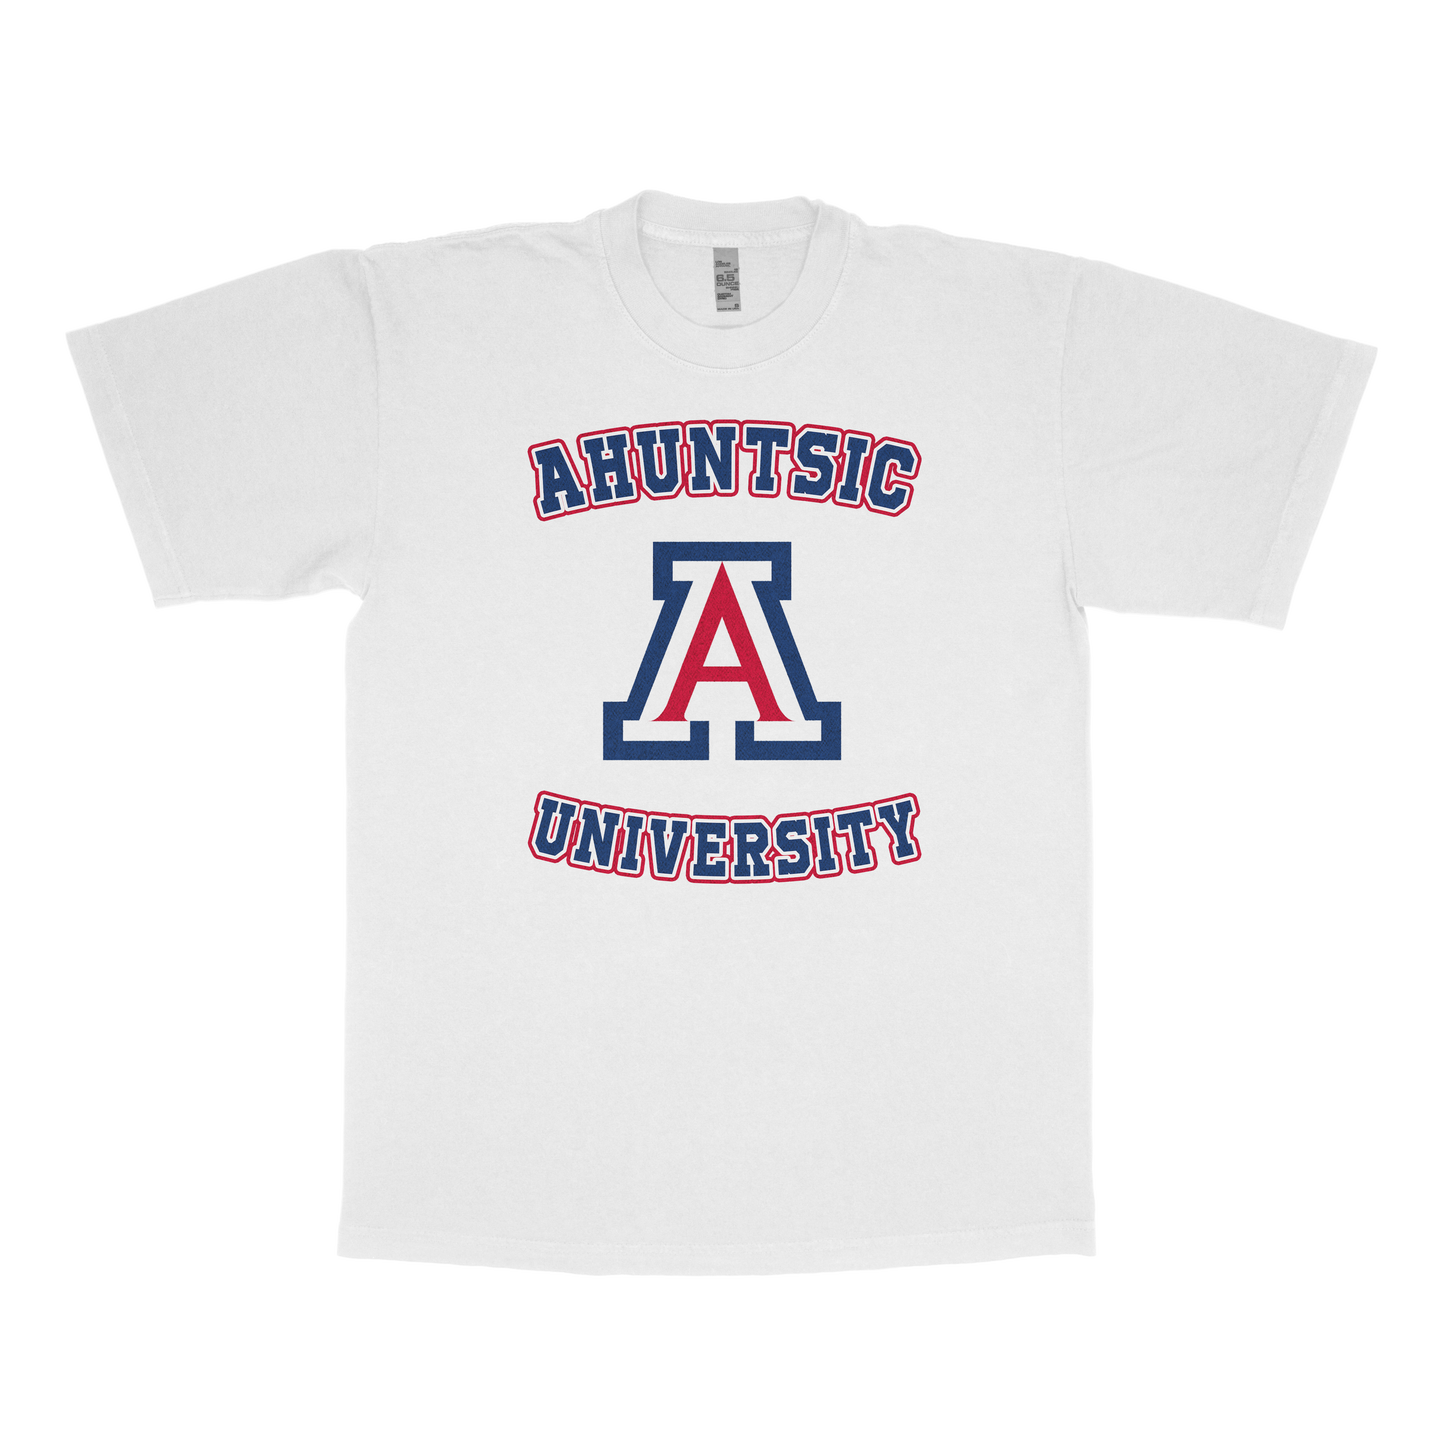 Ahuntsic University (FAKE U)